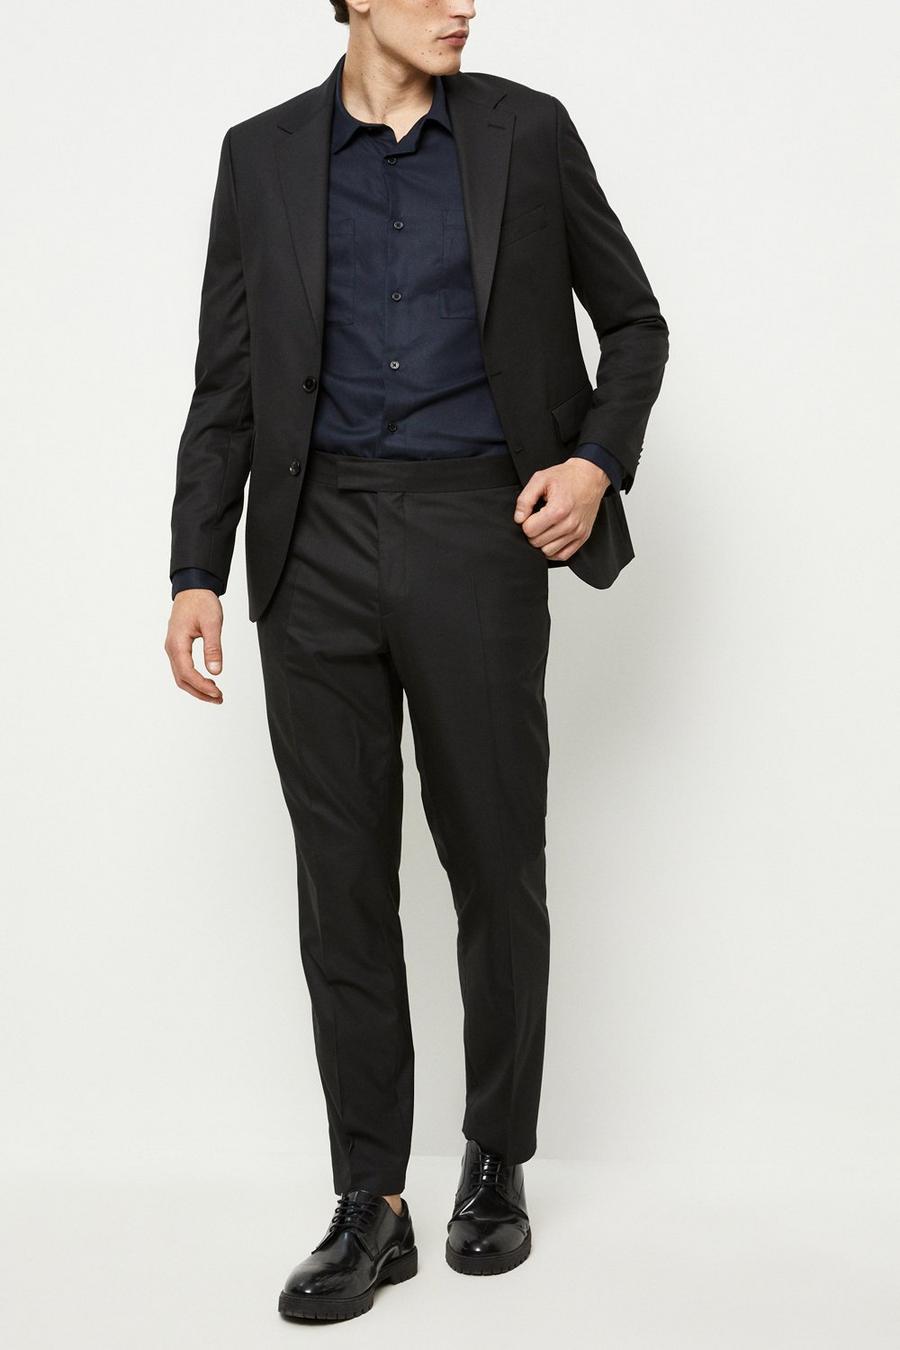 194 Slim Fit Black Suit Jacket